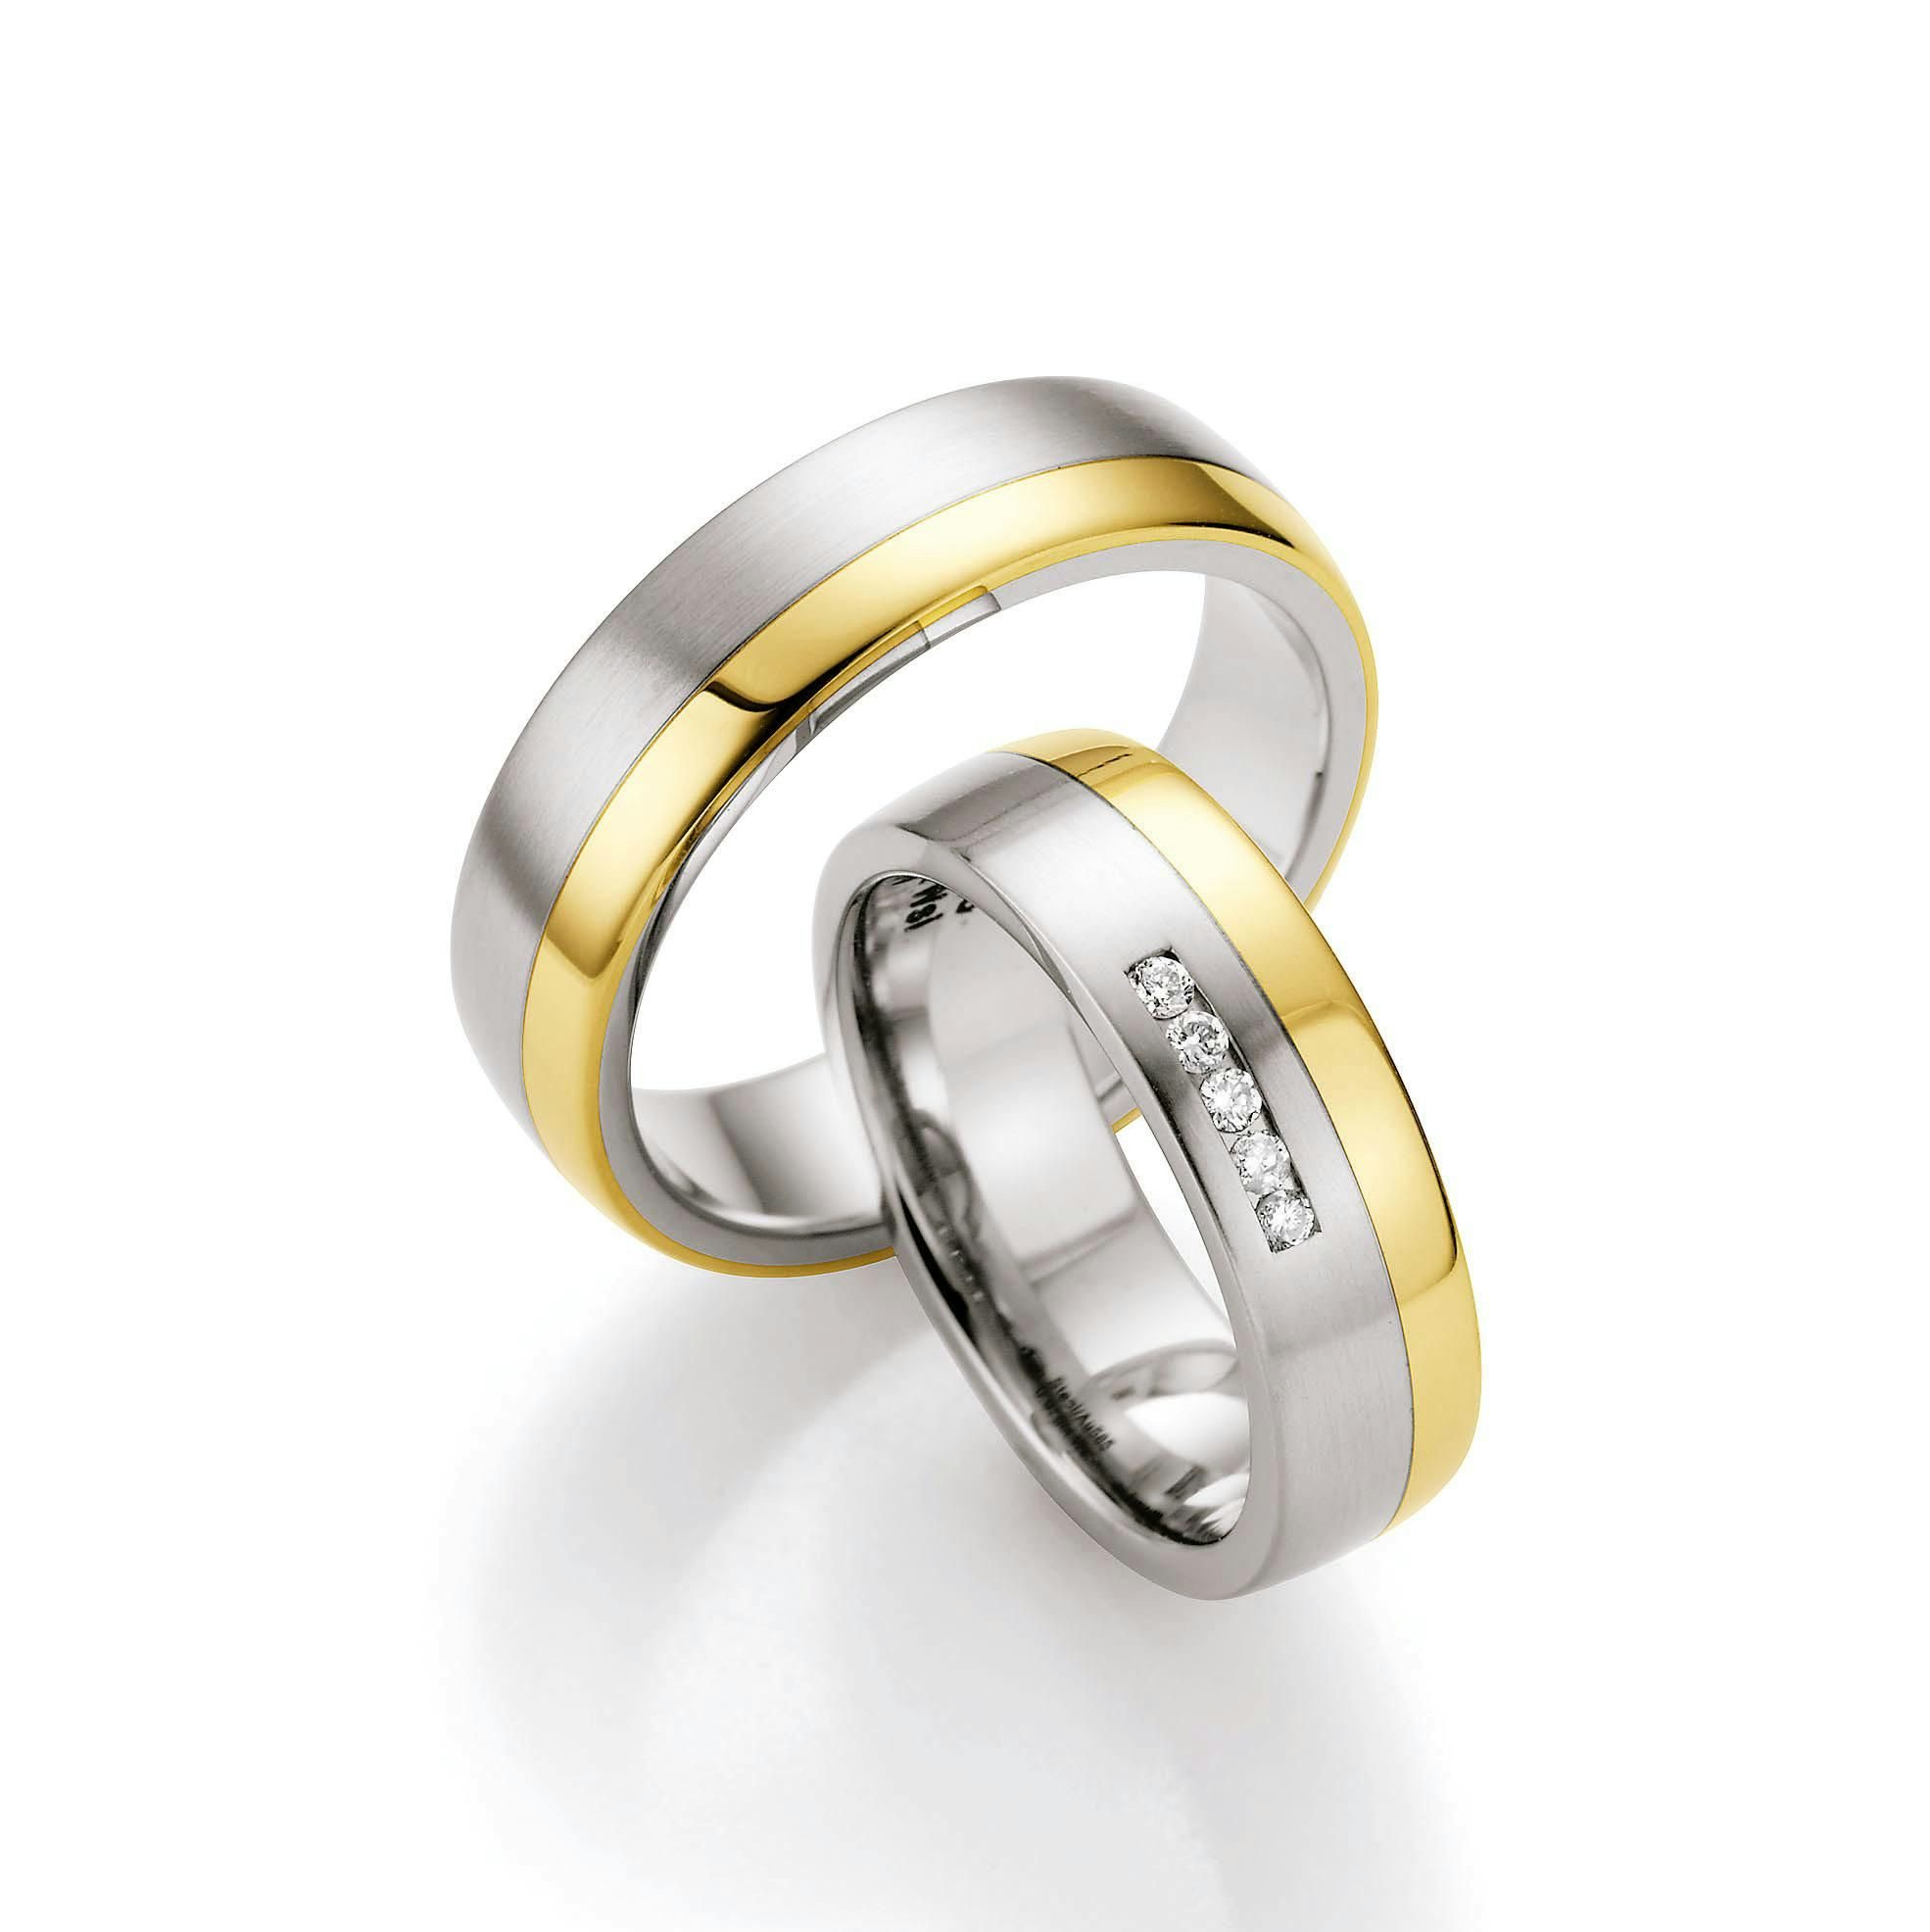 Finden Sie bei uns wunderschöne Ehering-Kombinationen aus Titan und Edelstahl mit Gold.